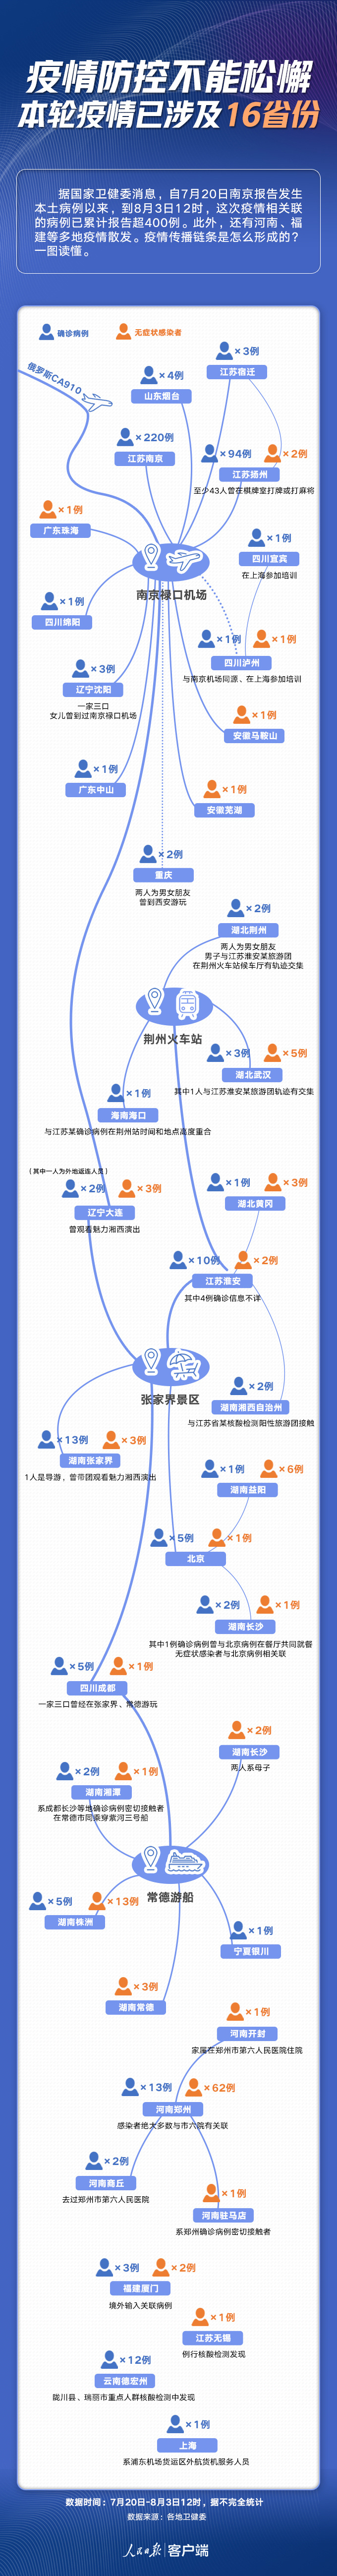 截至8月3日本轮疫情已涉16省份 传播链条一图读懂